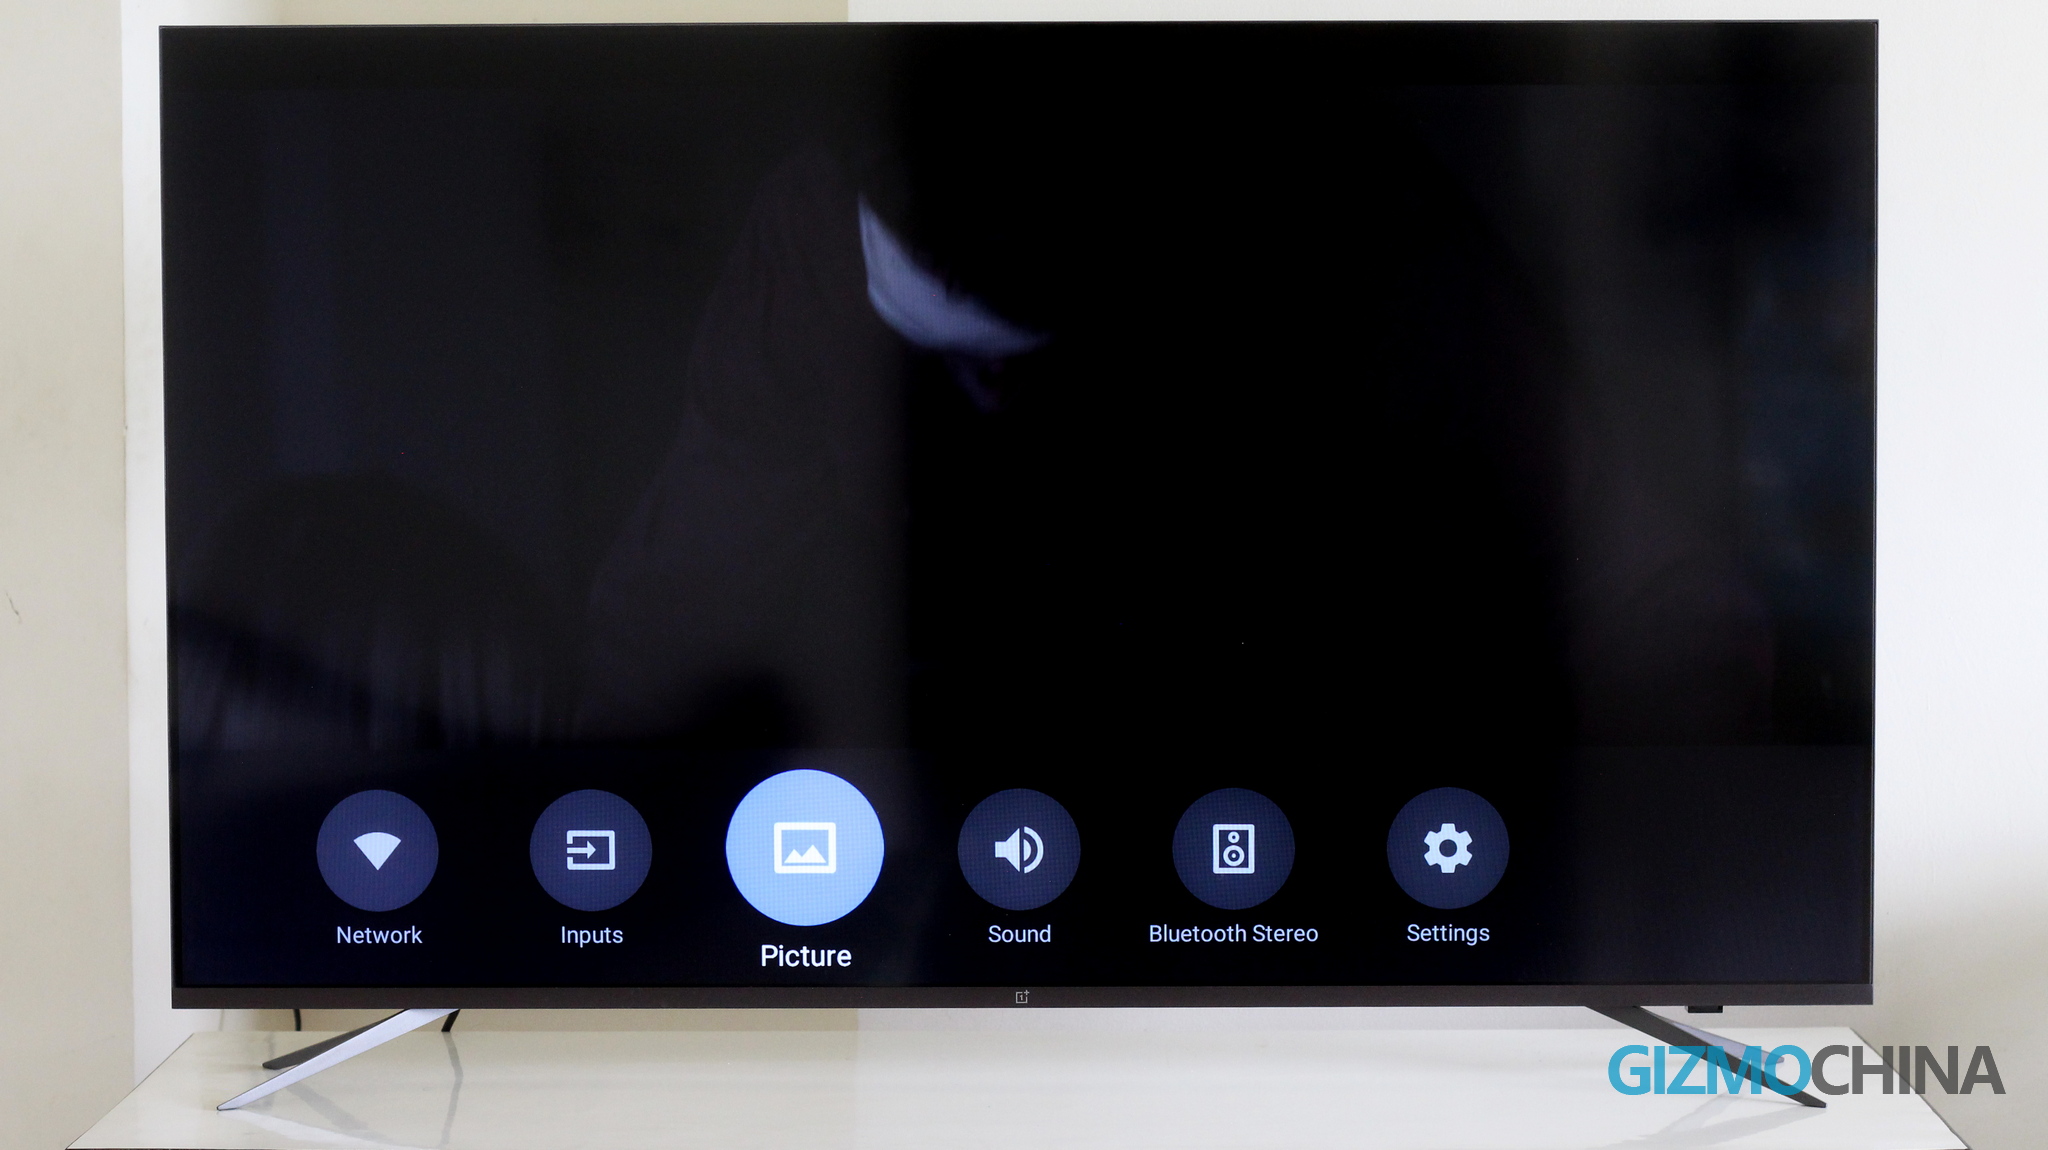   Configuración rápida de OnePlus TV U1 